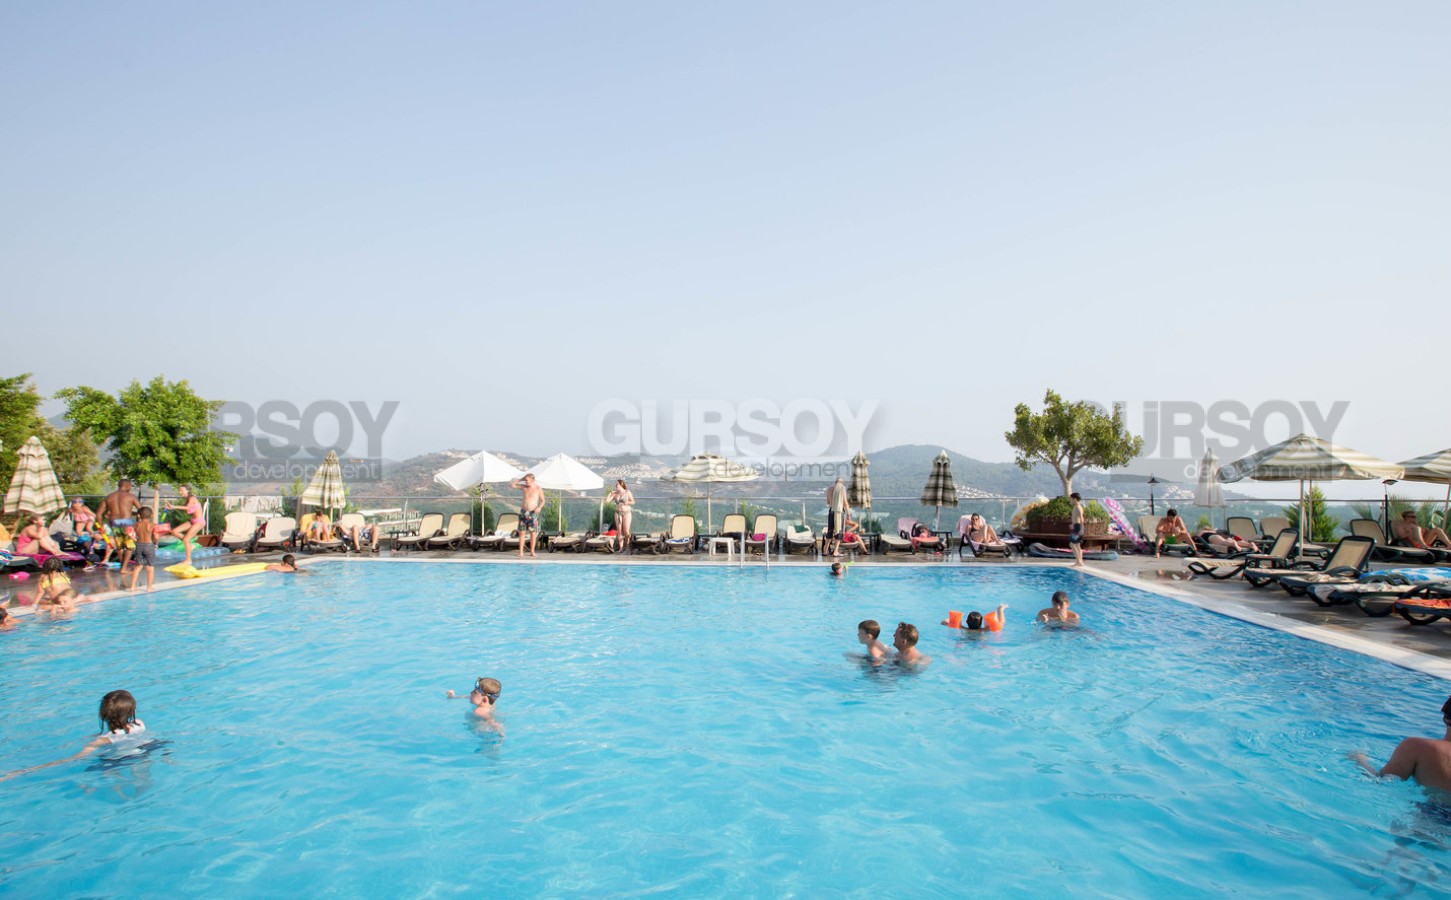 Квартира 2+1 с панорамным видом на море, 90 м2 в Каргыджаке. в Турции - фото 1